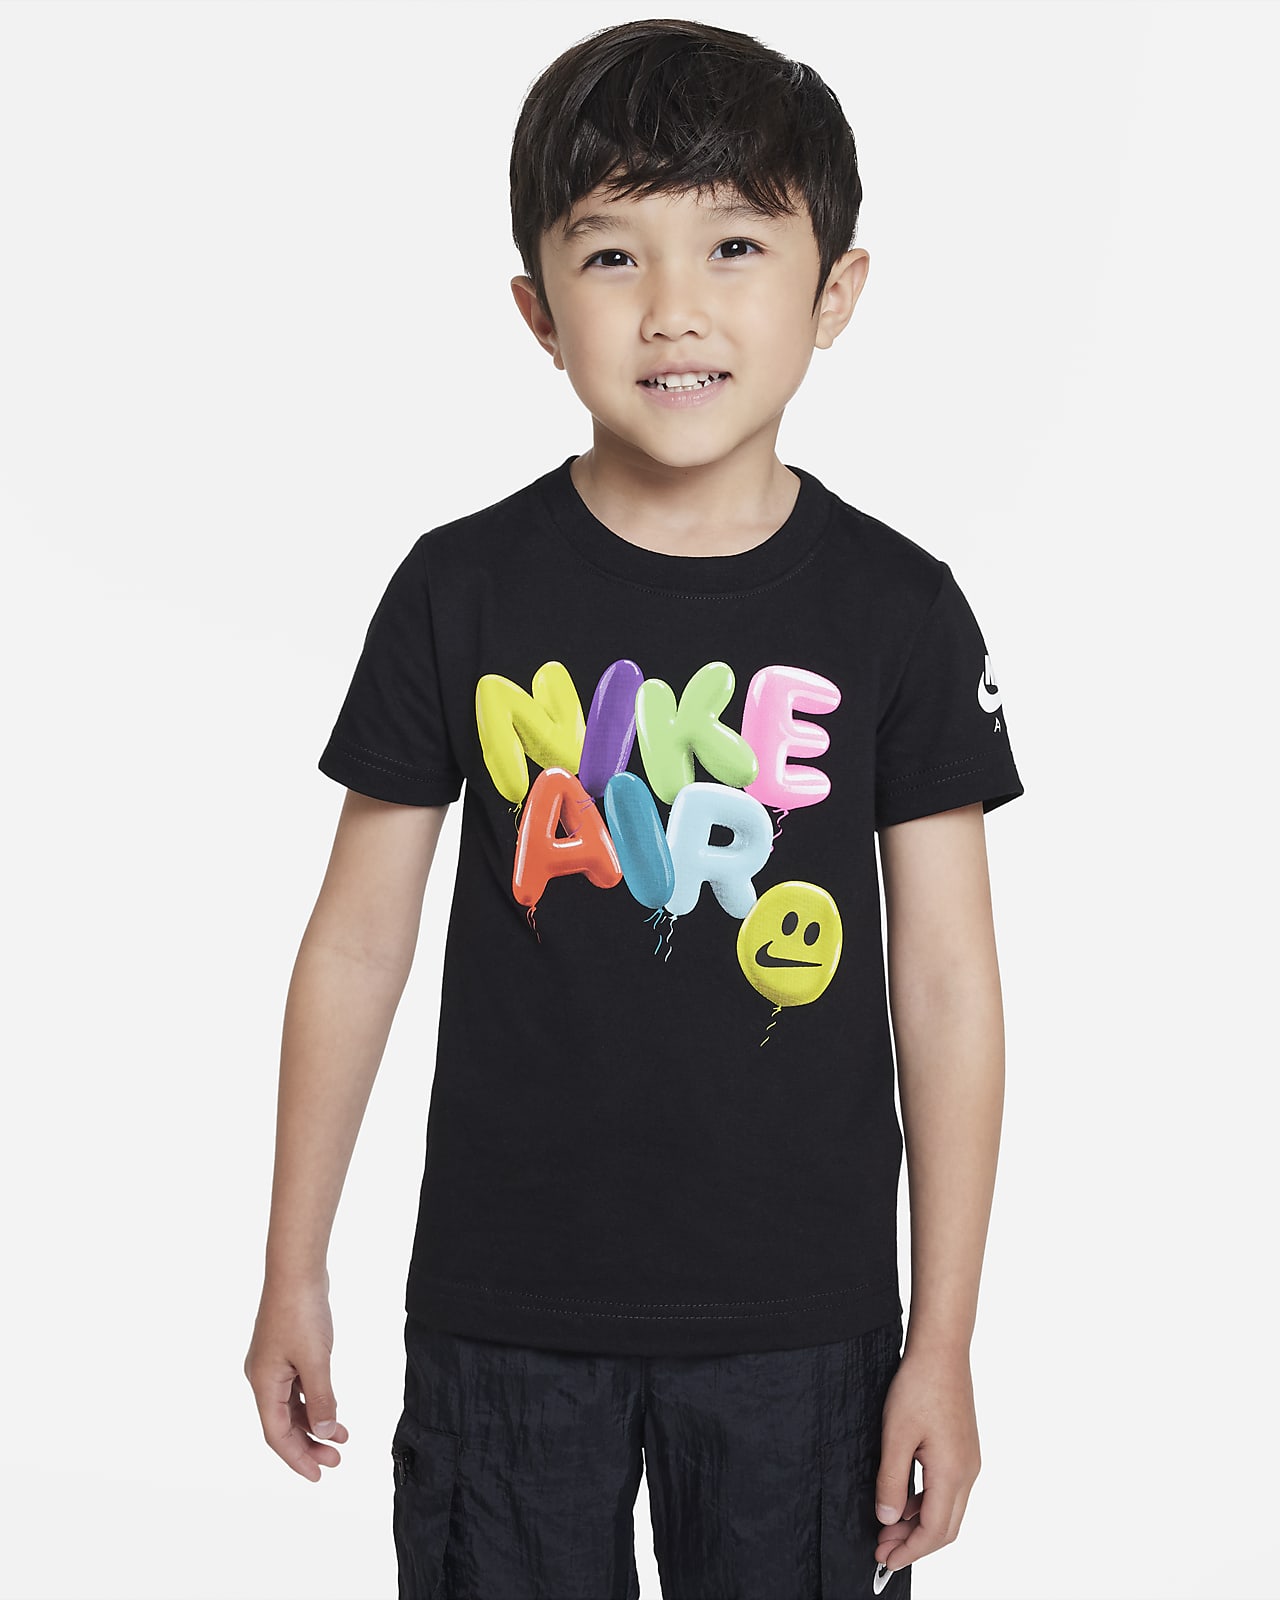 Nike Air Balloon Tee T-Shirt für jüngere Kinder